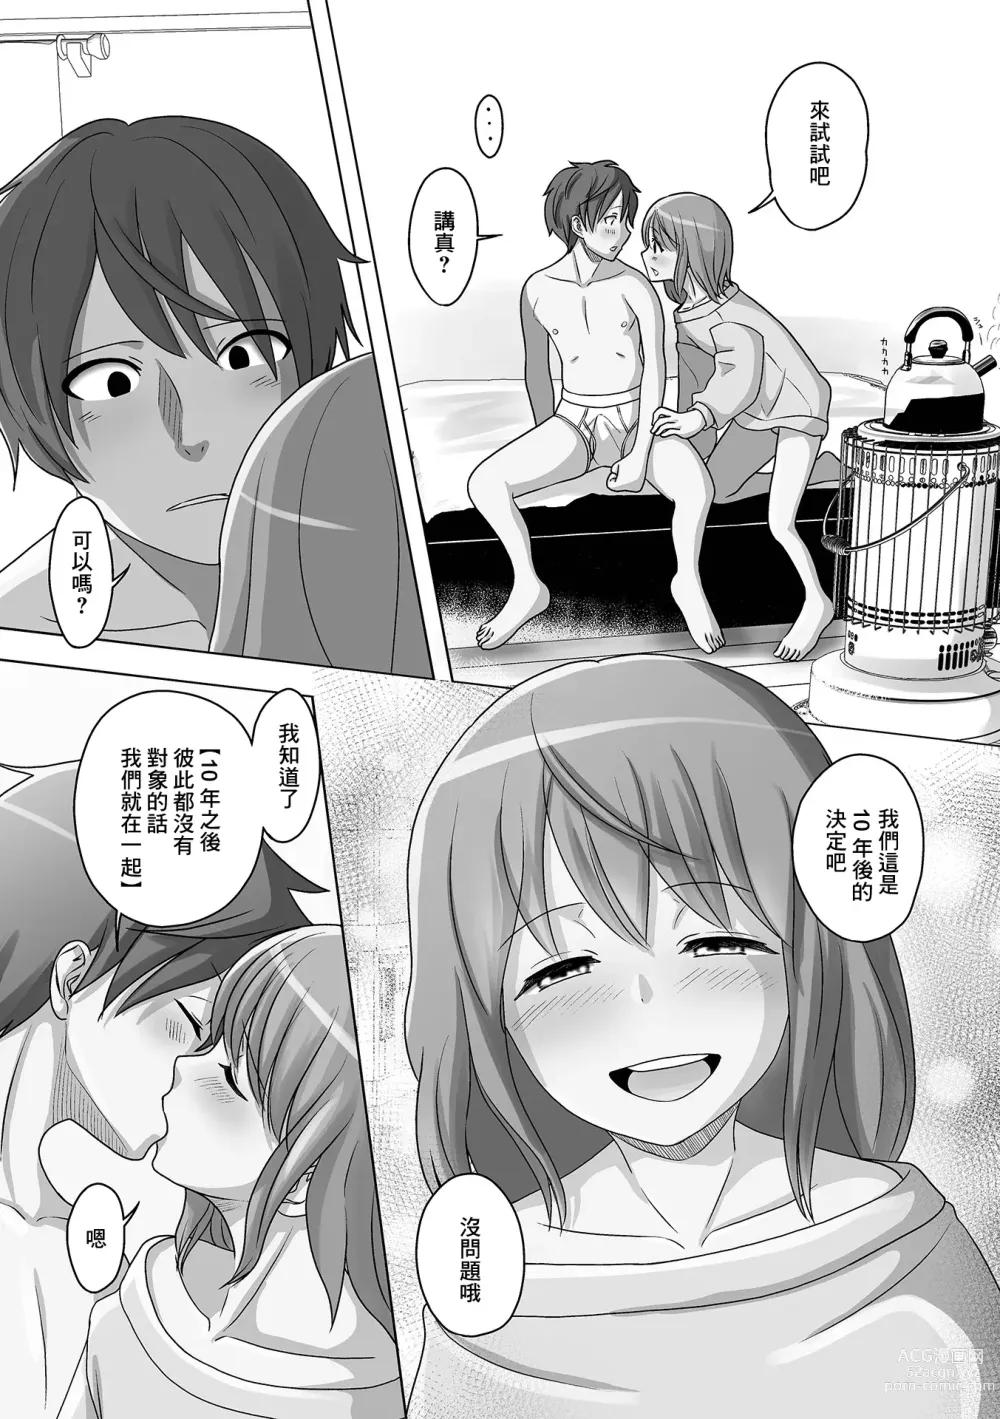 Page 5 of manga Kuchiyakusoku wa Otameshi no Ato de